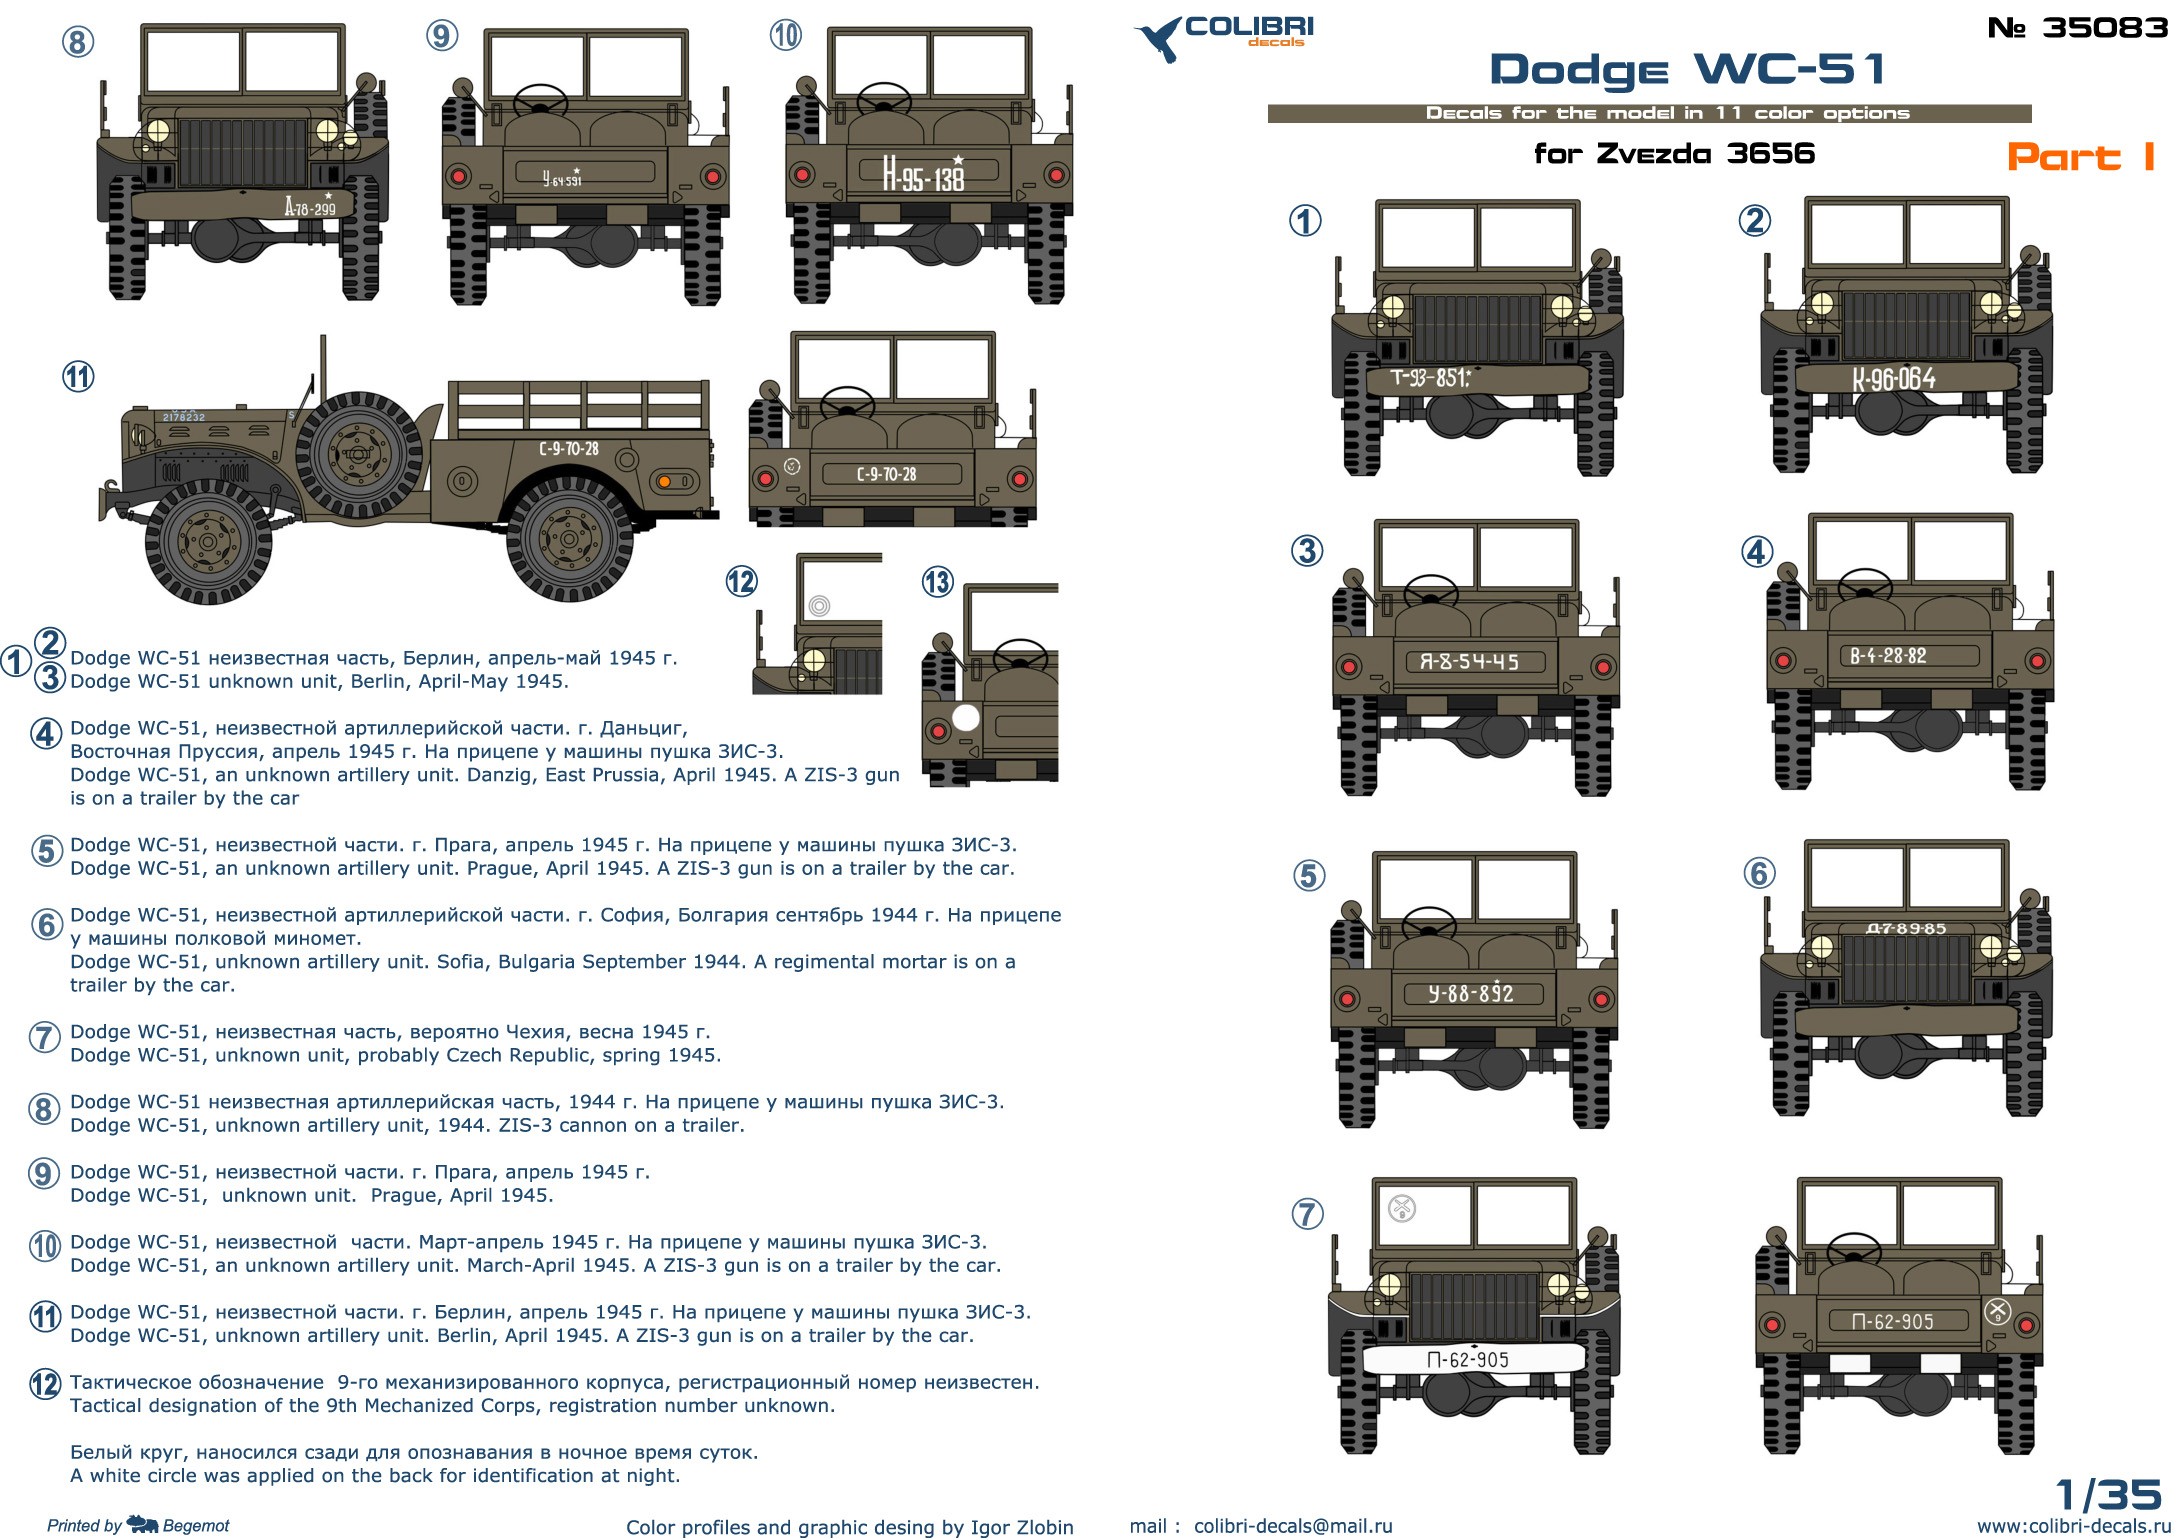 Декаль 1/35 Dodge WC-51 part I (Colibri Decals)